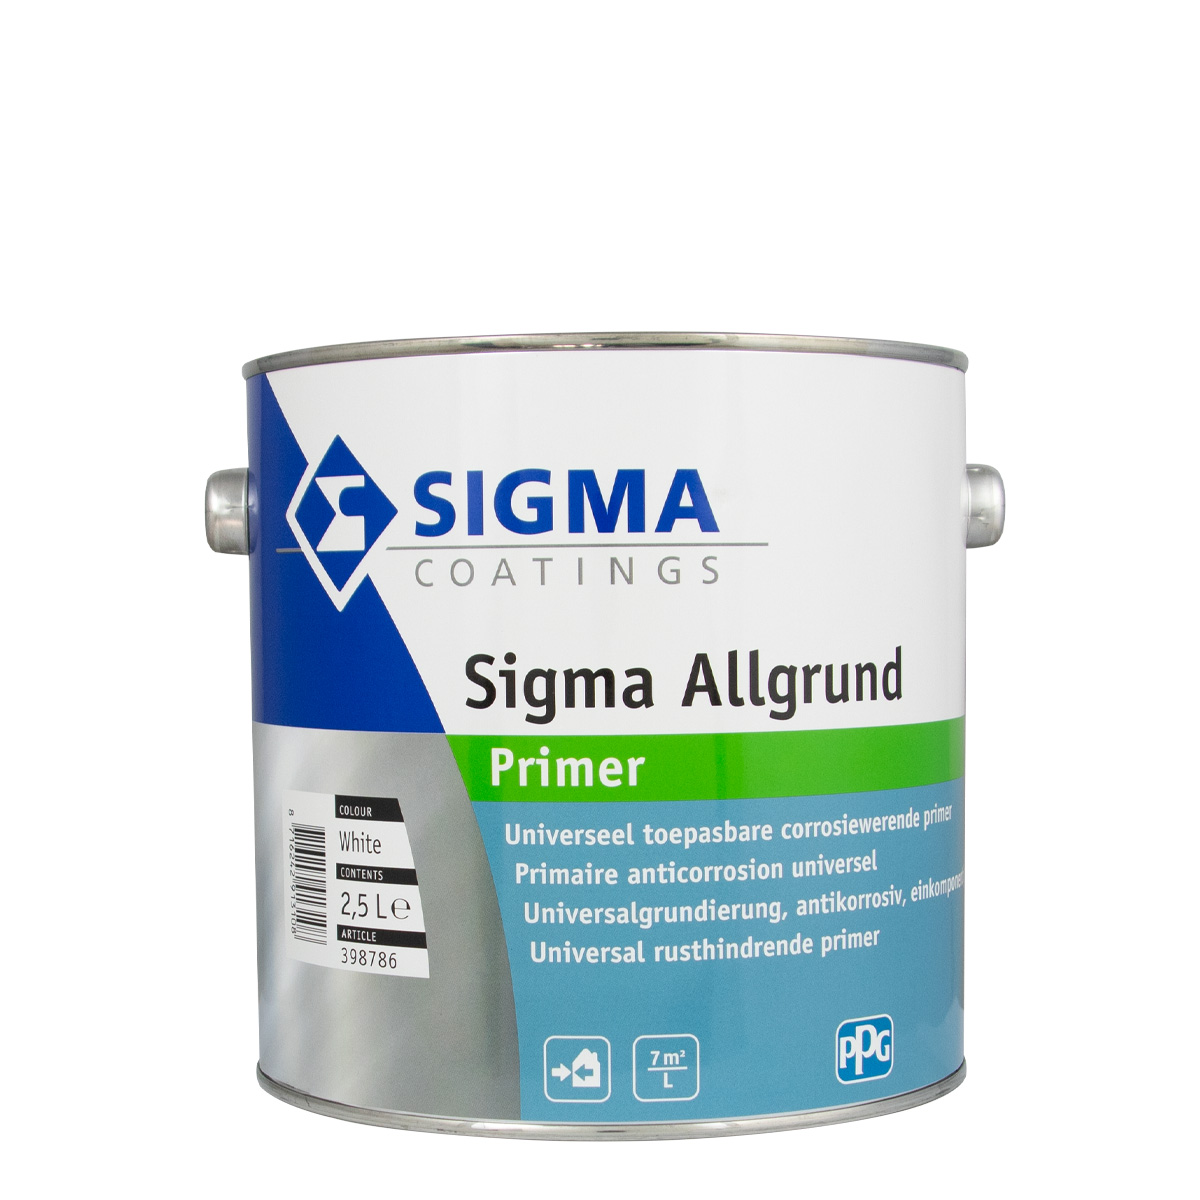 Sigma Allgrund weiss 2,5L, Universalgrundierung